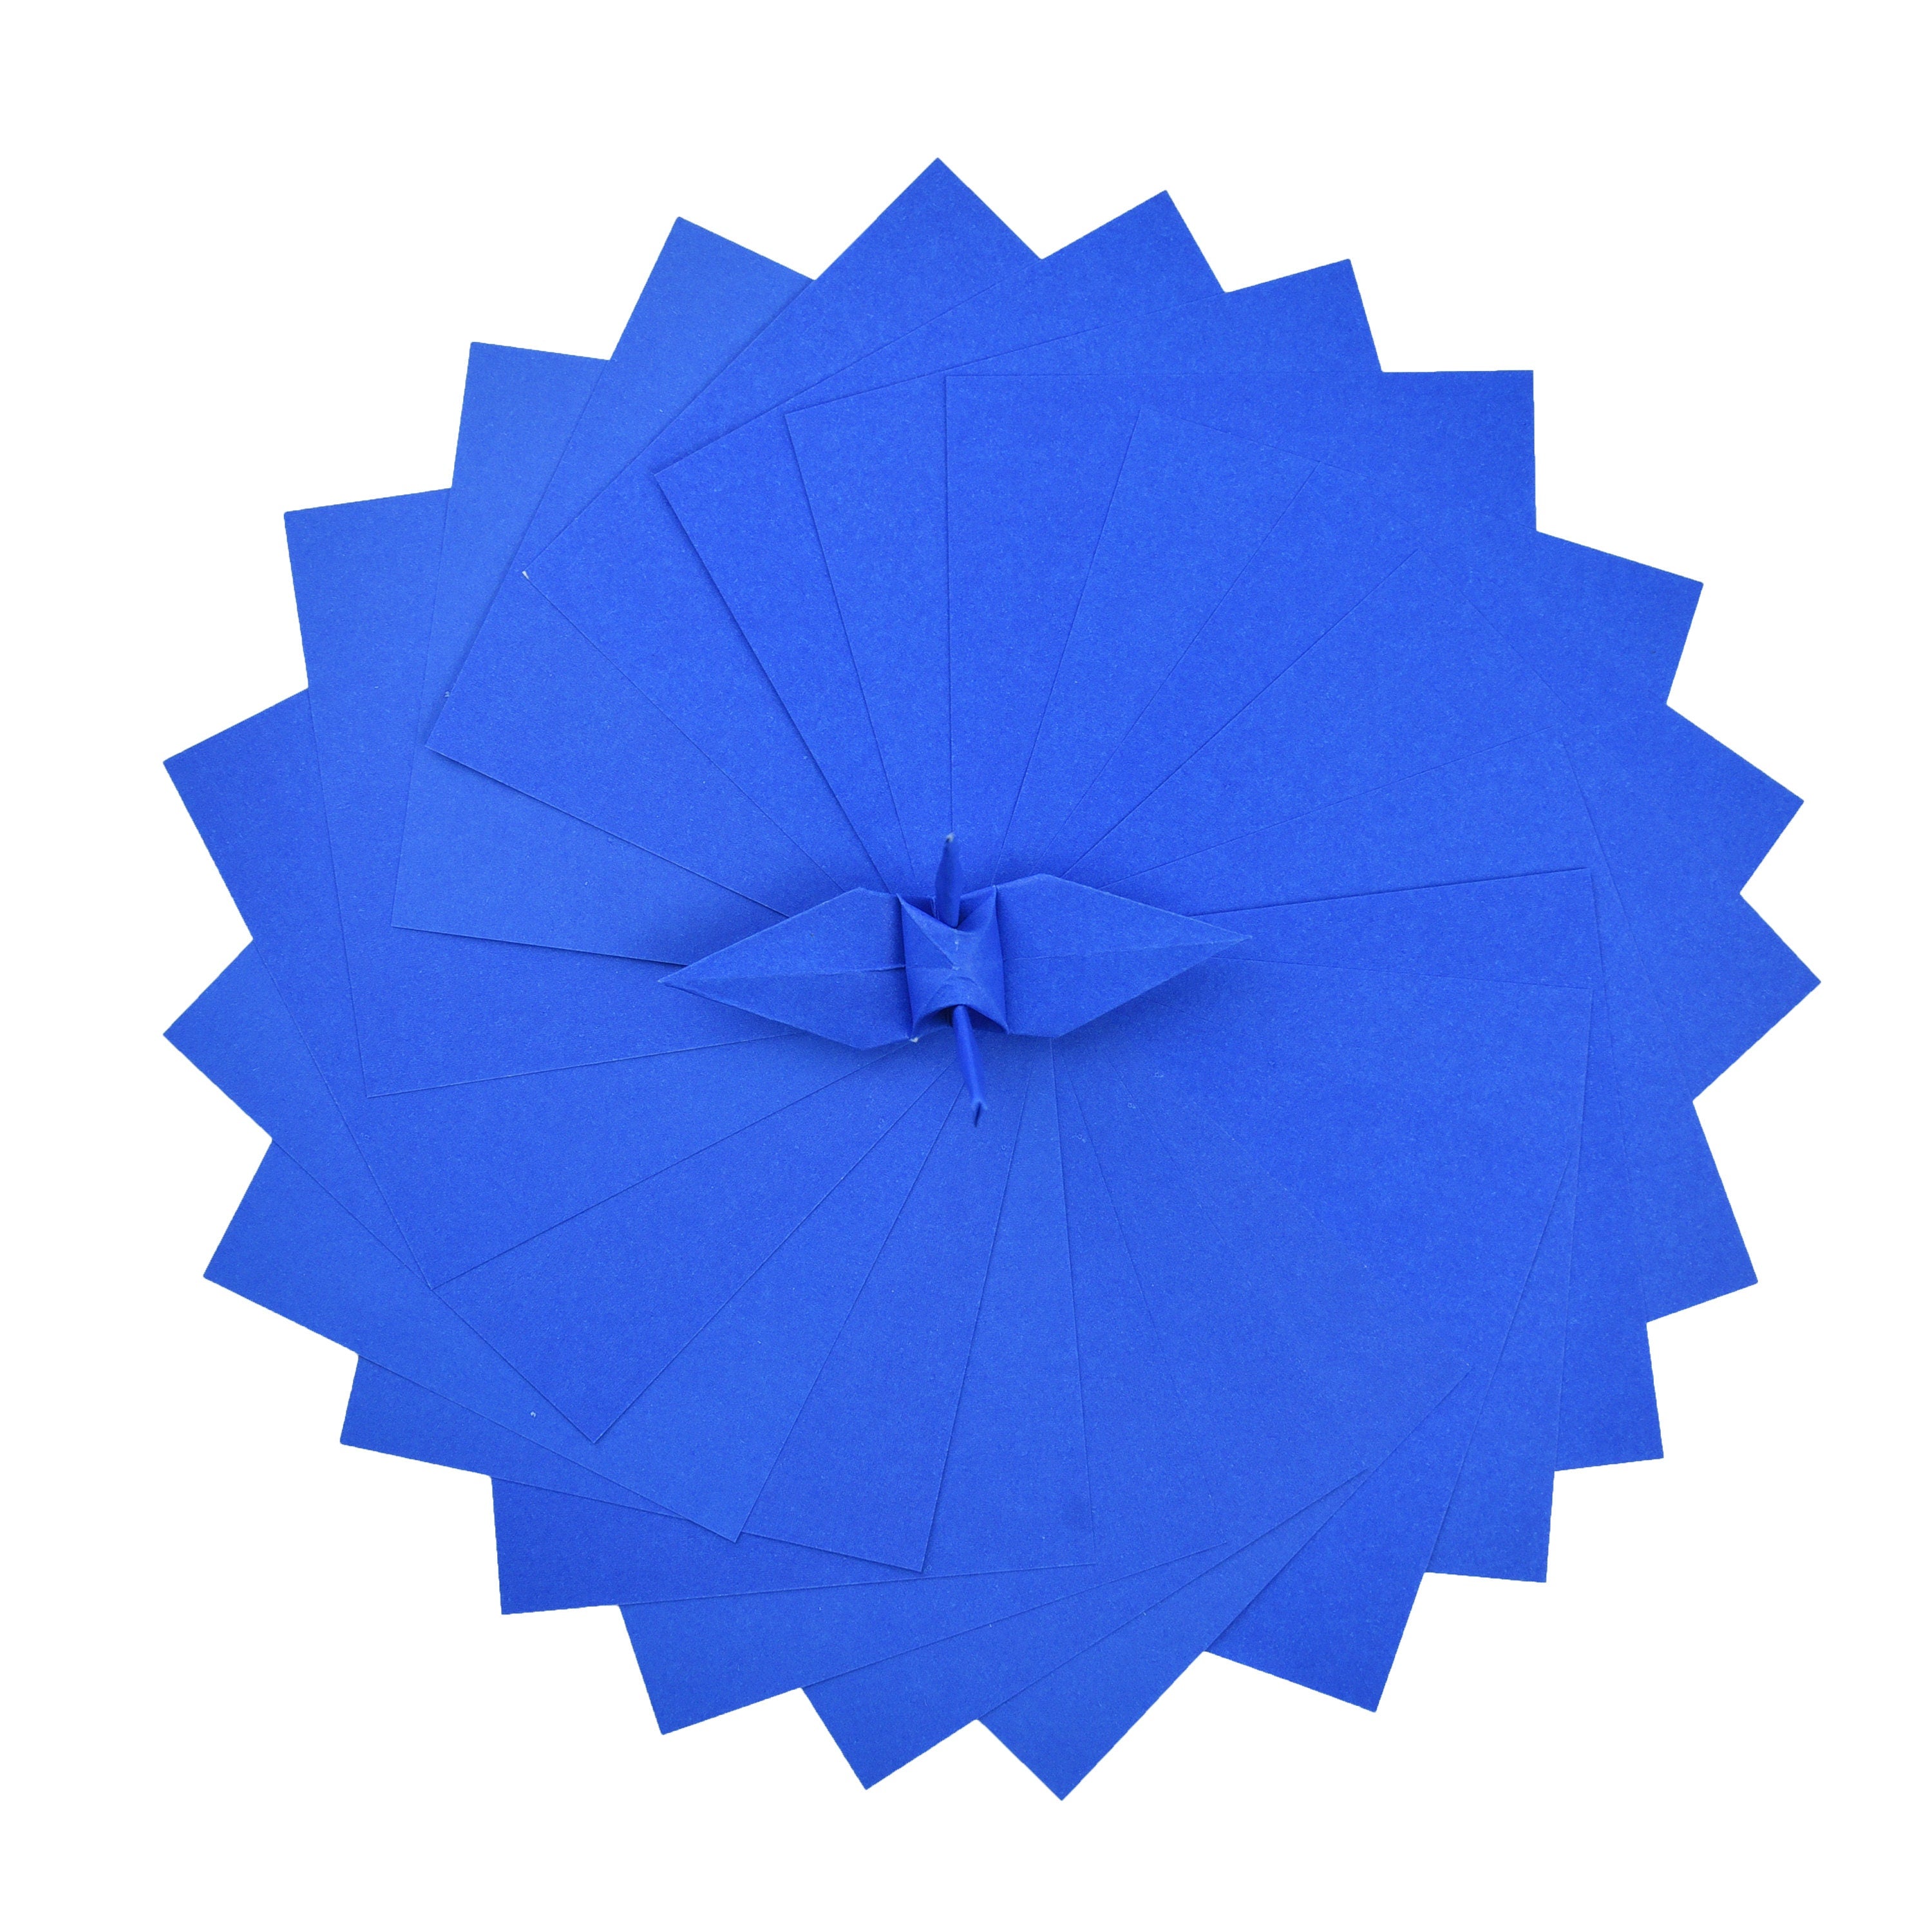 100 hojas de papel de origami morado - 3x3 pulgadas - Paquete de papel cuadrado para plegado, grullas de origami y decoración - P08